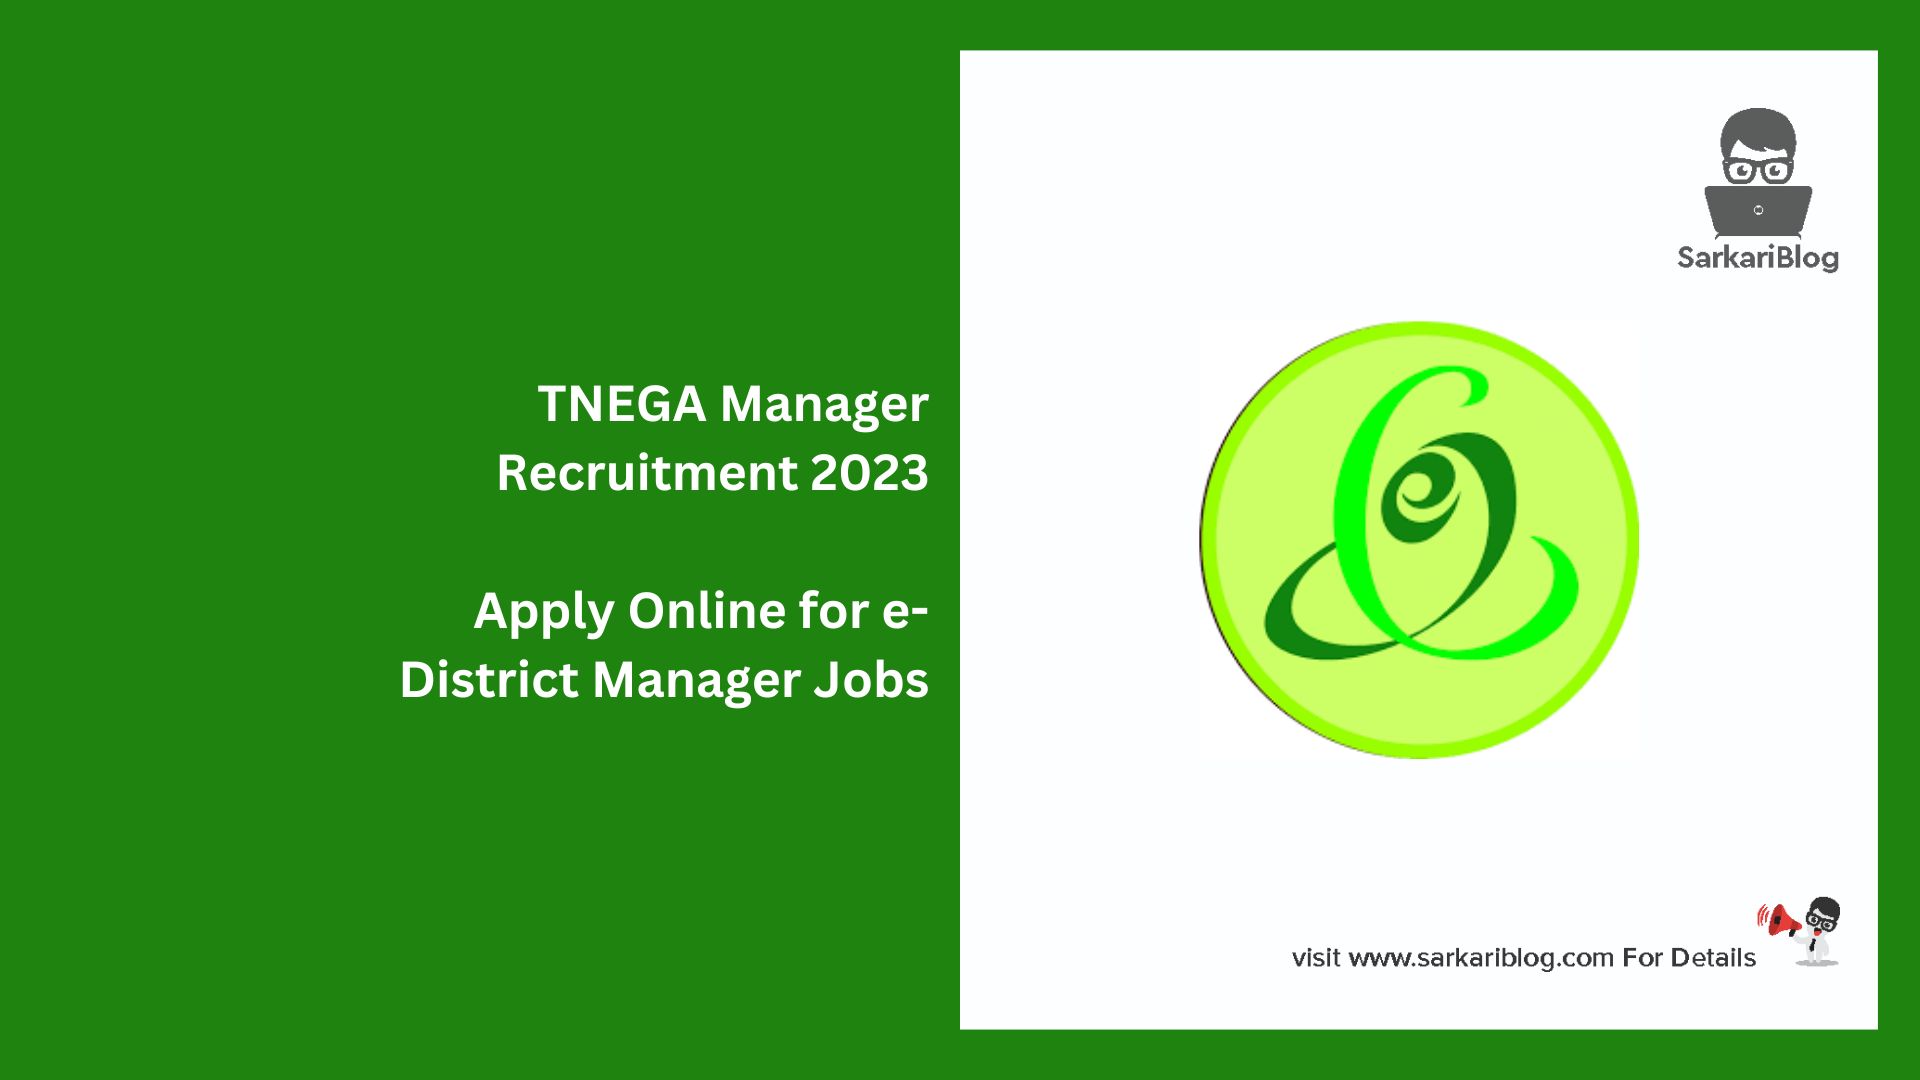 TNEGA Manager Recruitment 2023